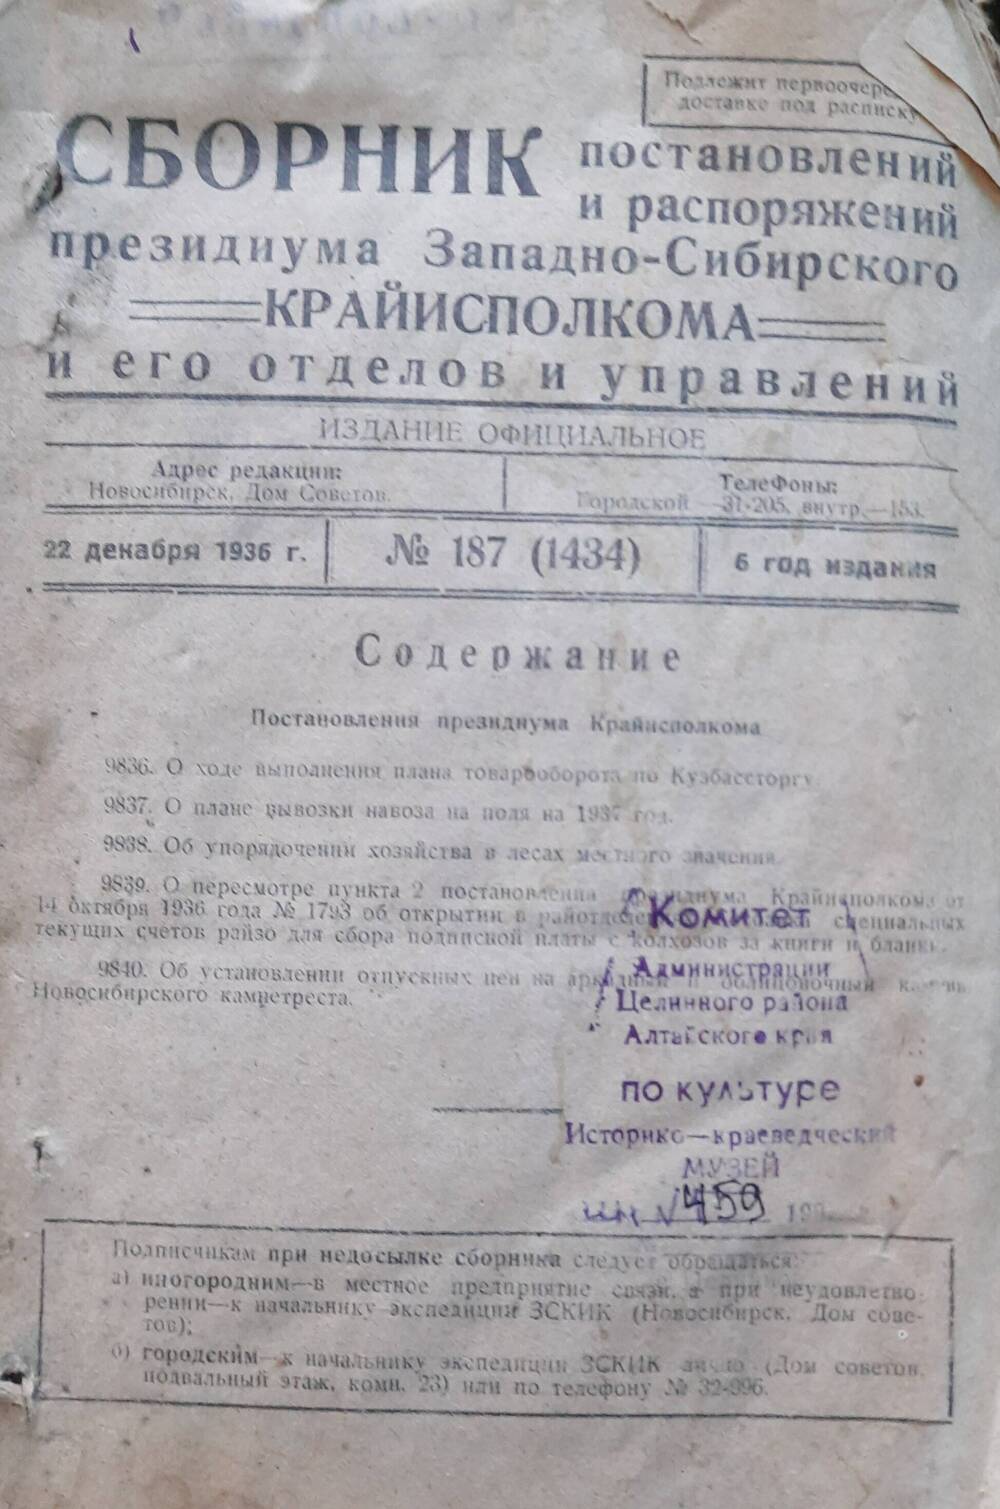 Сборник постановлений президиума Западно-Сибирского крайисполкома, его управлений и отделов 1935 г. с № 3 по №166